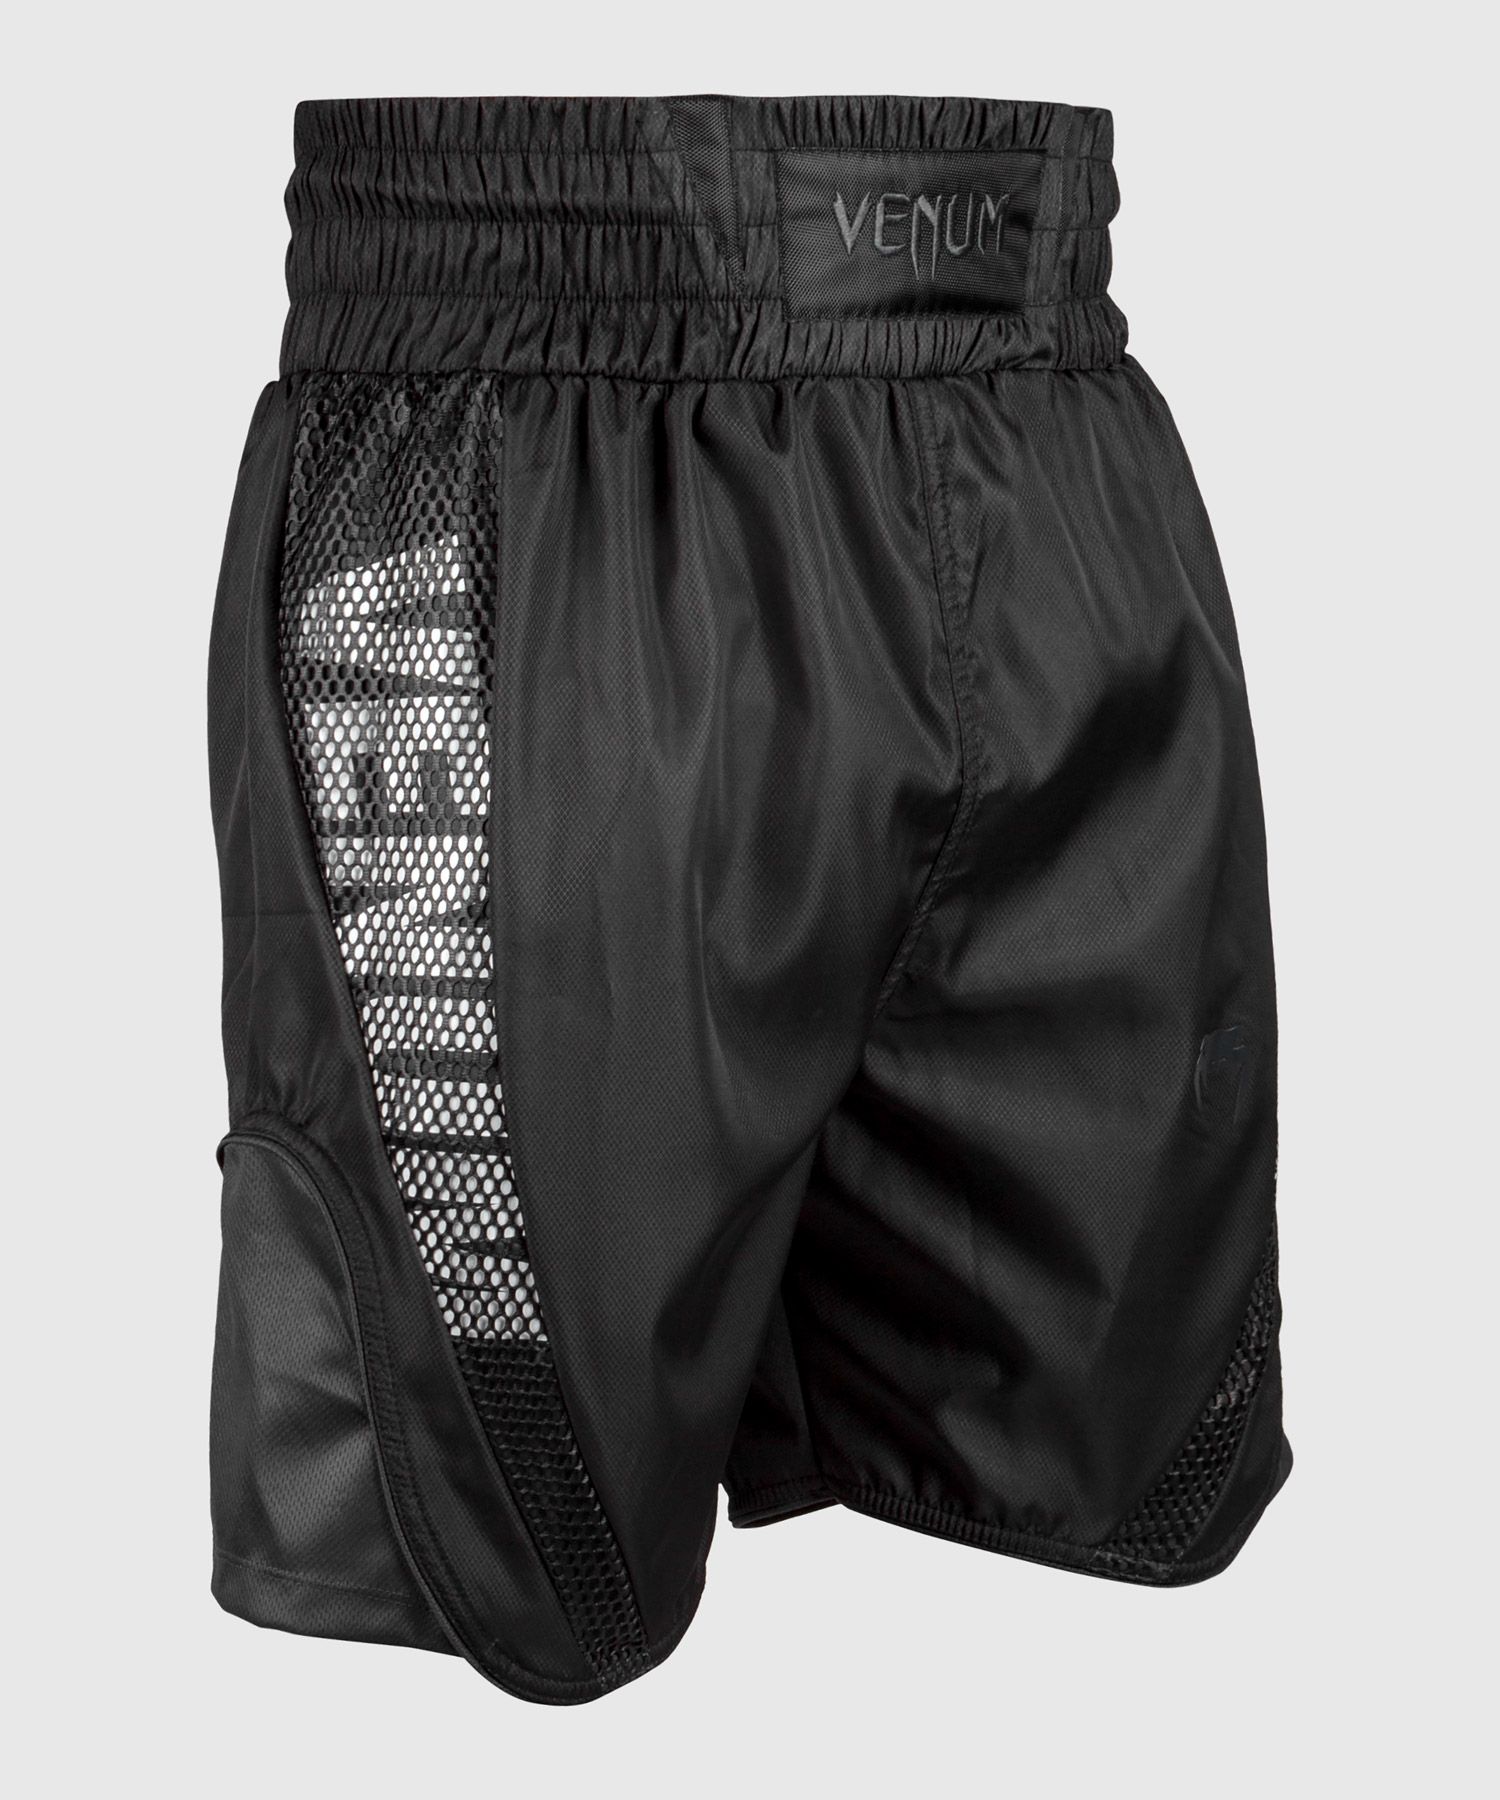 Venum Elite Boxing Shorts - Black/Black